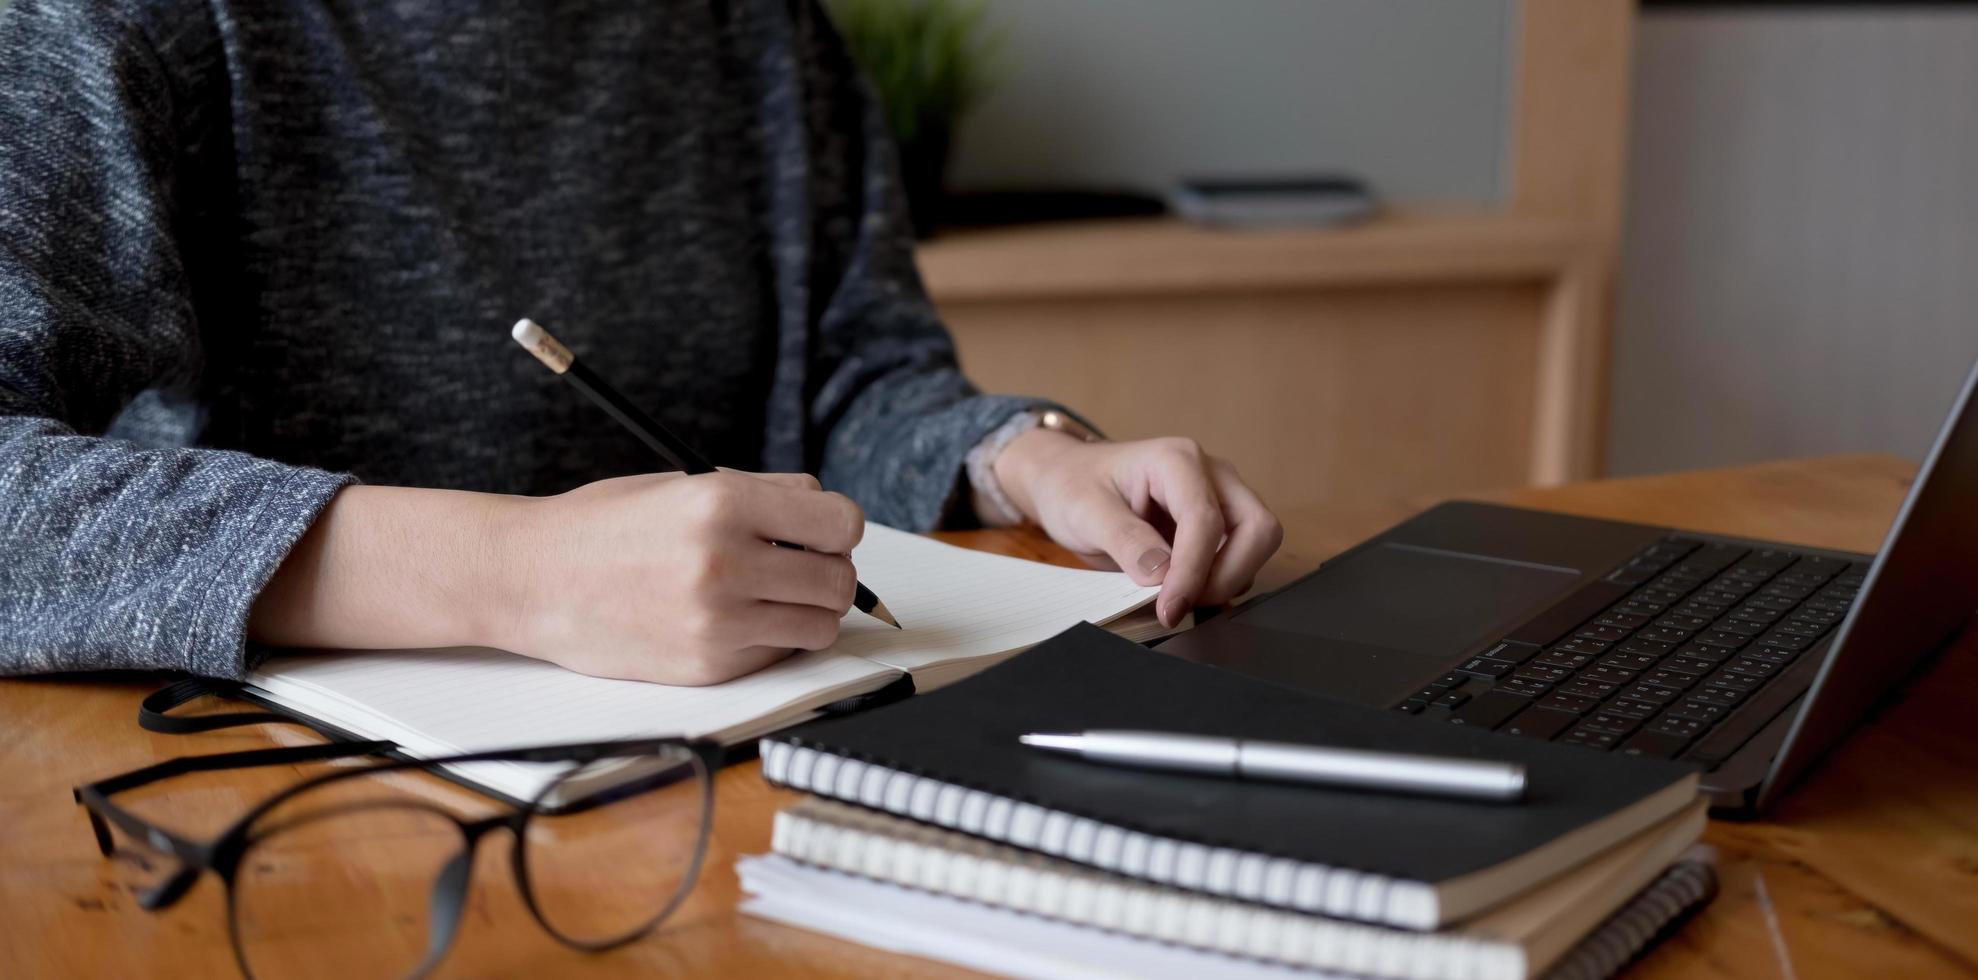 foto cortada mão de mulher escrevendo fazendo lista fazendo anotações no bloco de notas trabalhando ou aprendendo online com laptop em casa